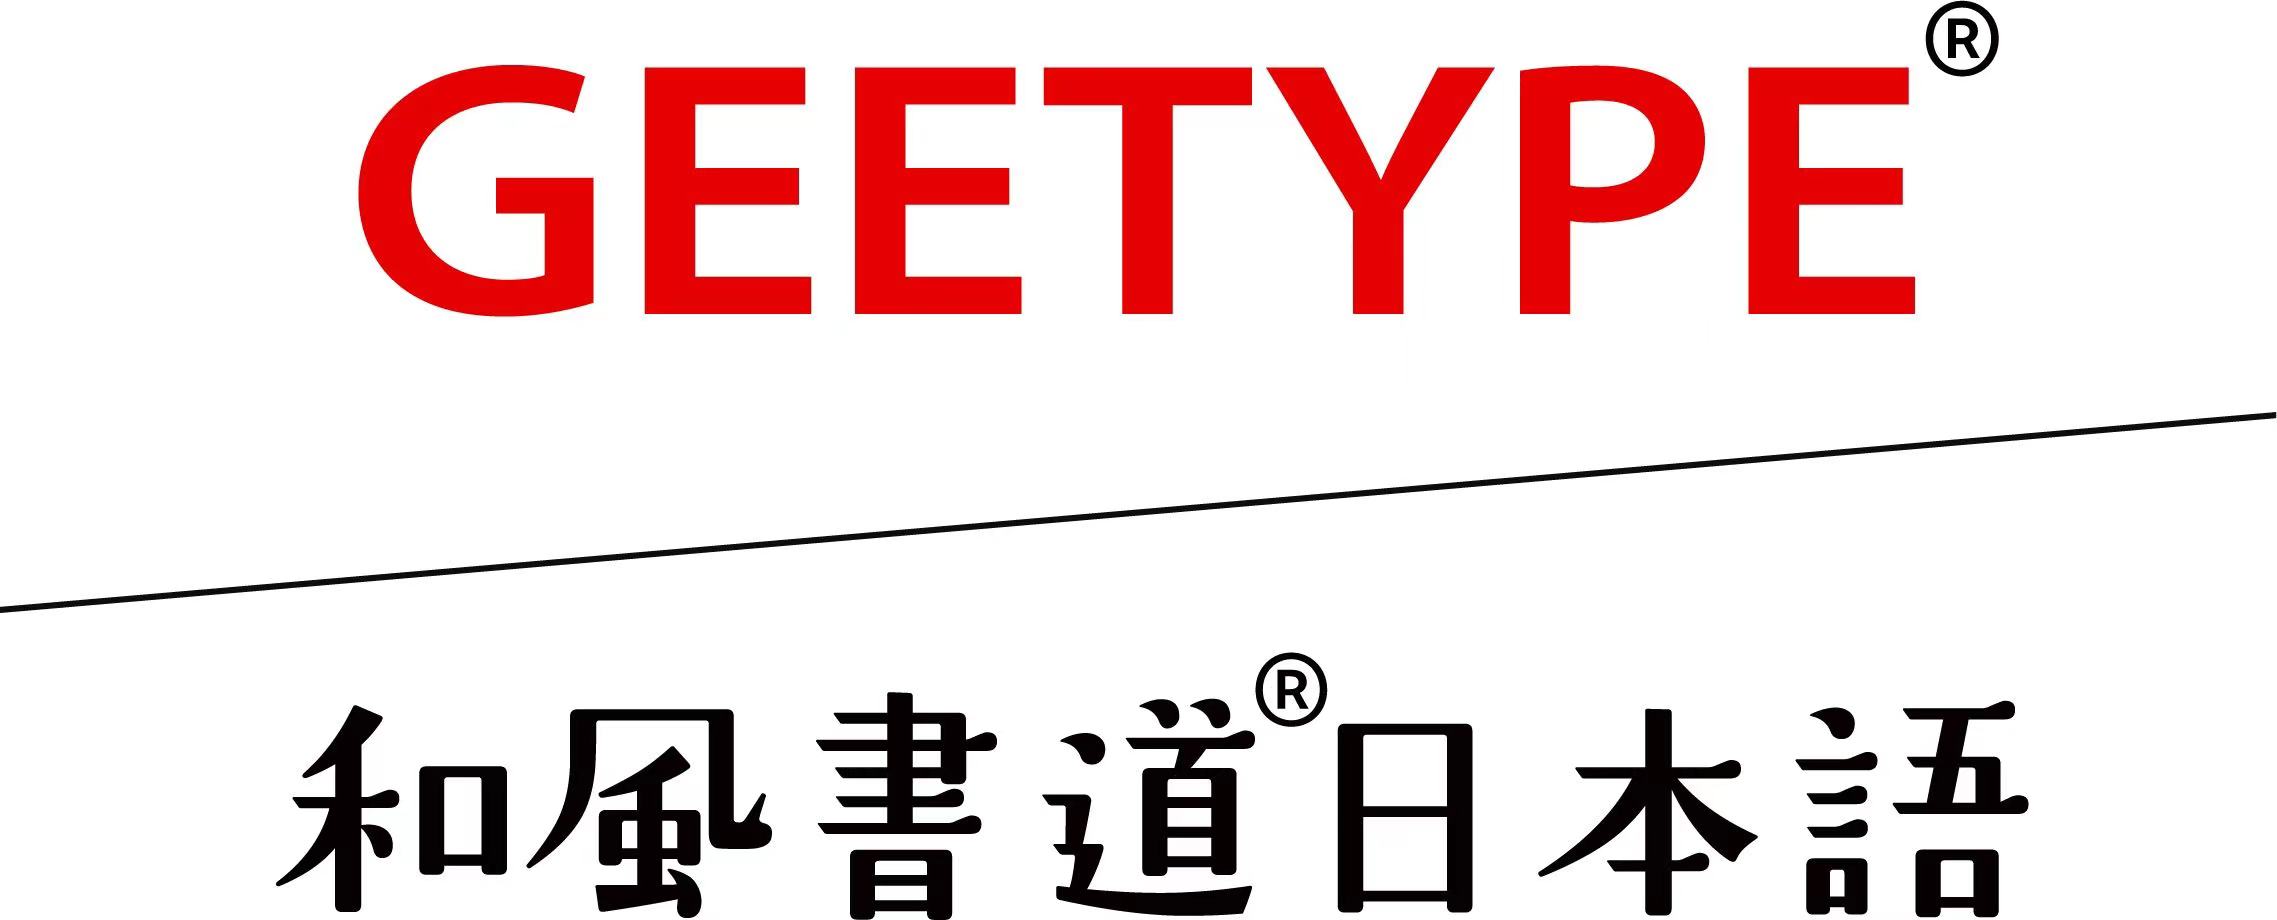 日本字体,中国字库公司,商用授权